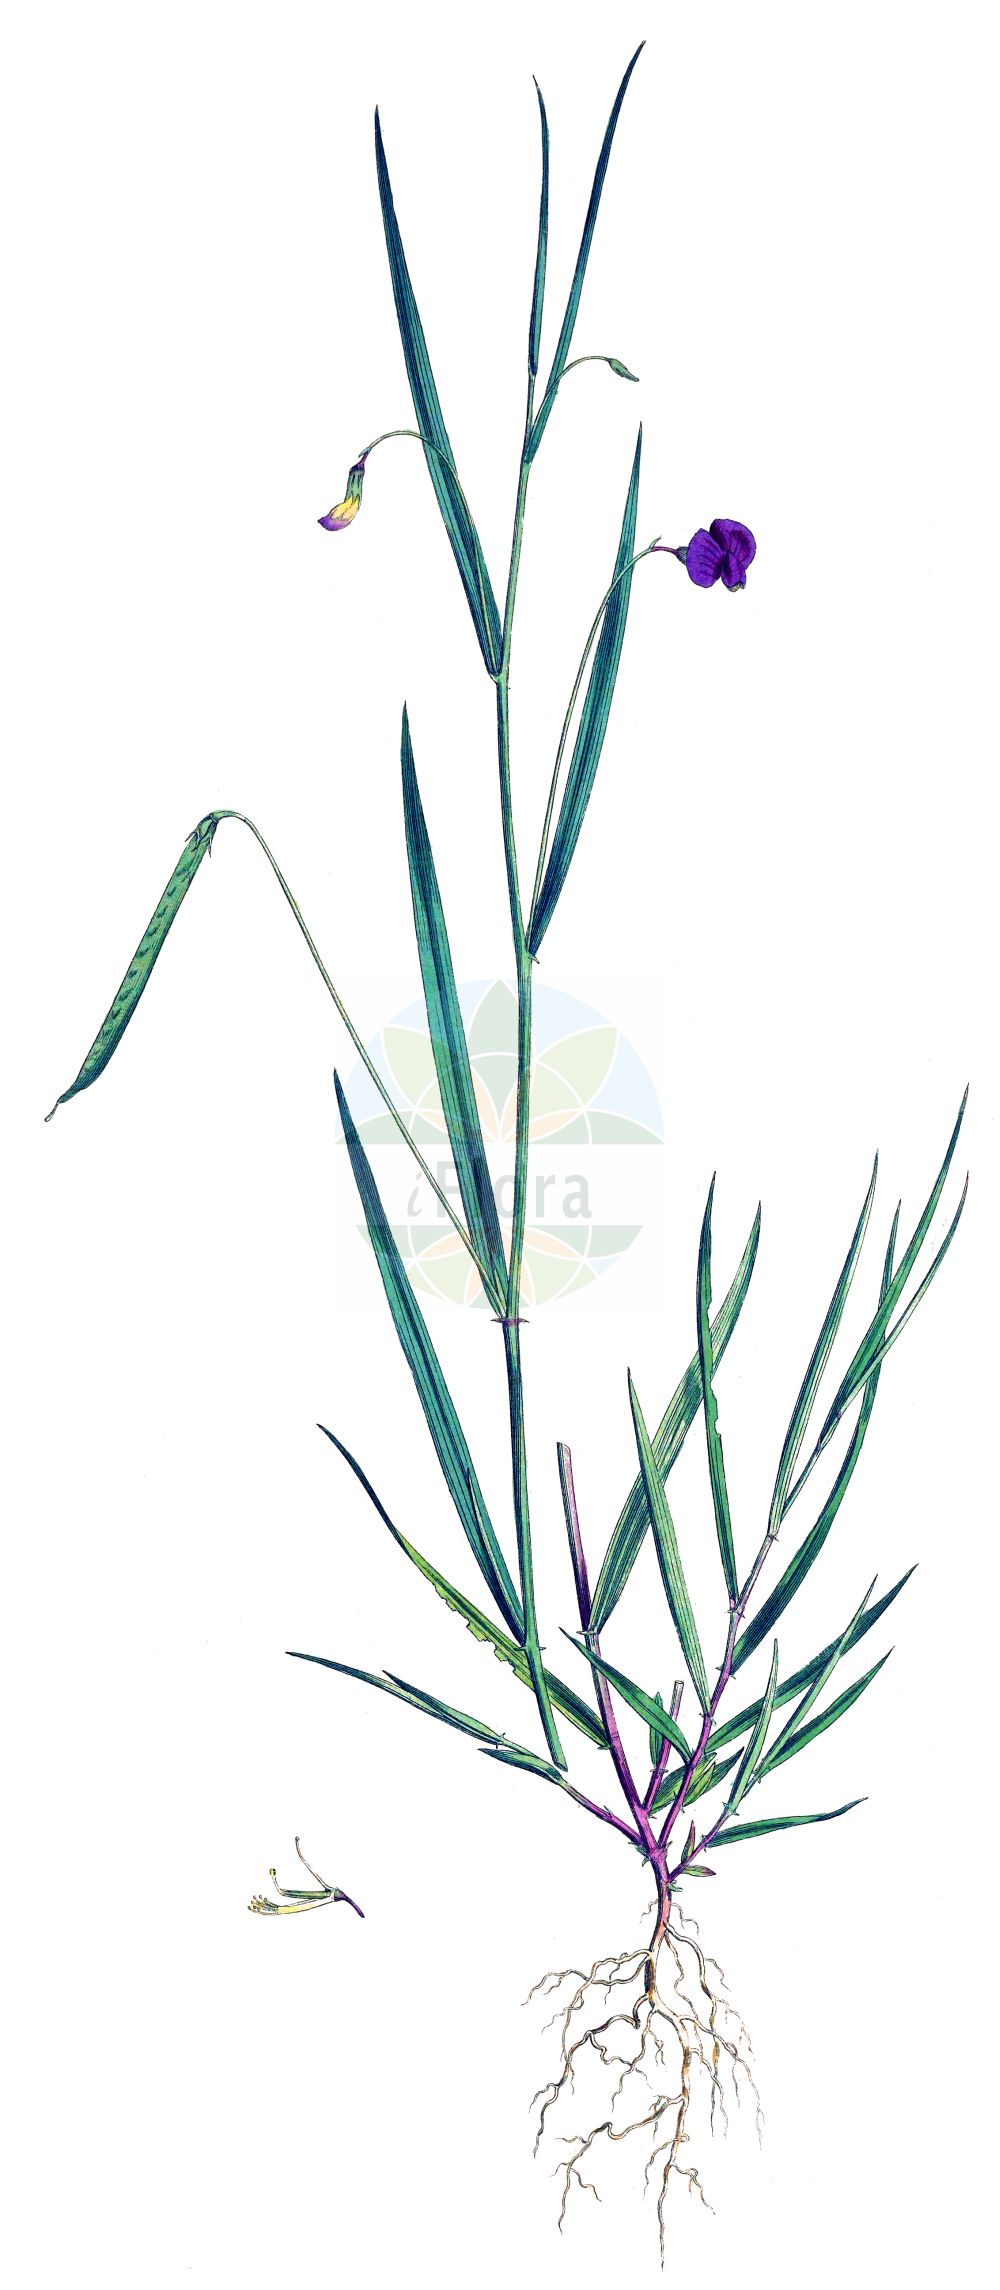 Historische Abbildung von Lathyrus nissolia (Gras-Platterbse - Grass Vetchling). Das Bild zeigt Blatt, Bluete, Frucht und Same. ---- Historical Drawing of Lathyrus nissolia (Gras-Platterbse - Grass Vetchling). The image is showing leaf, flower, fruit and seed.(Lathyrus nissolia,Gras-Platterbse,Grass Vetchling,Lathyrus nissolia,Orobus nissolia,Gras-Platterbse,Blattlose Platterbse,Grass Vetchling,Grass Pea,Lathyrus,Platterbse,Pea,Fabaceae,Schmetterlingsblütler,Pea family,Blatt,Bluete,Frucht,Same,leaf,flower,fruit,seed,Curtis (1777-1798))